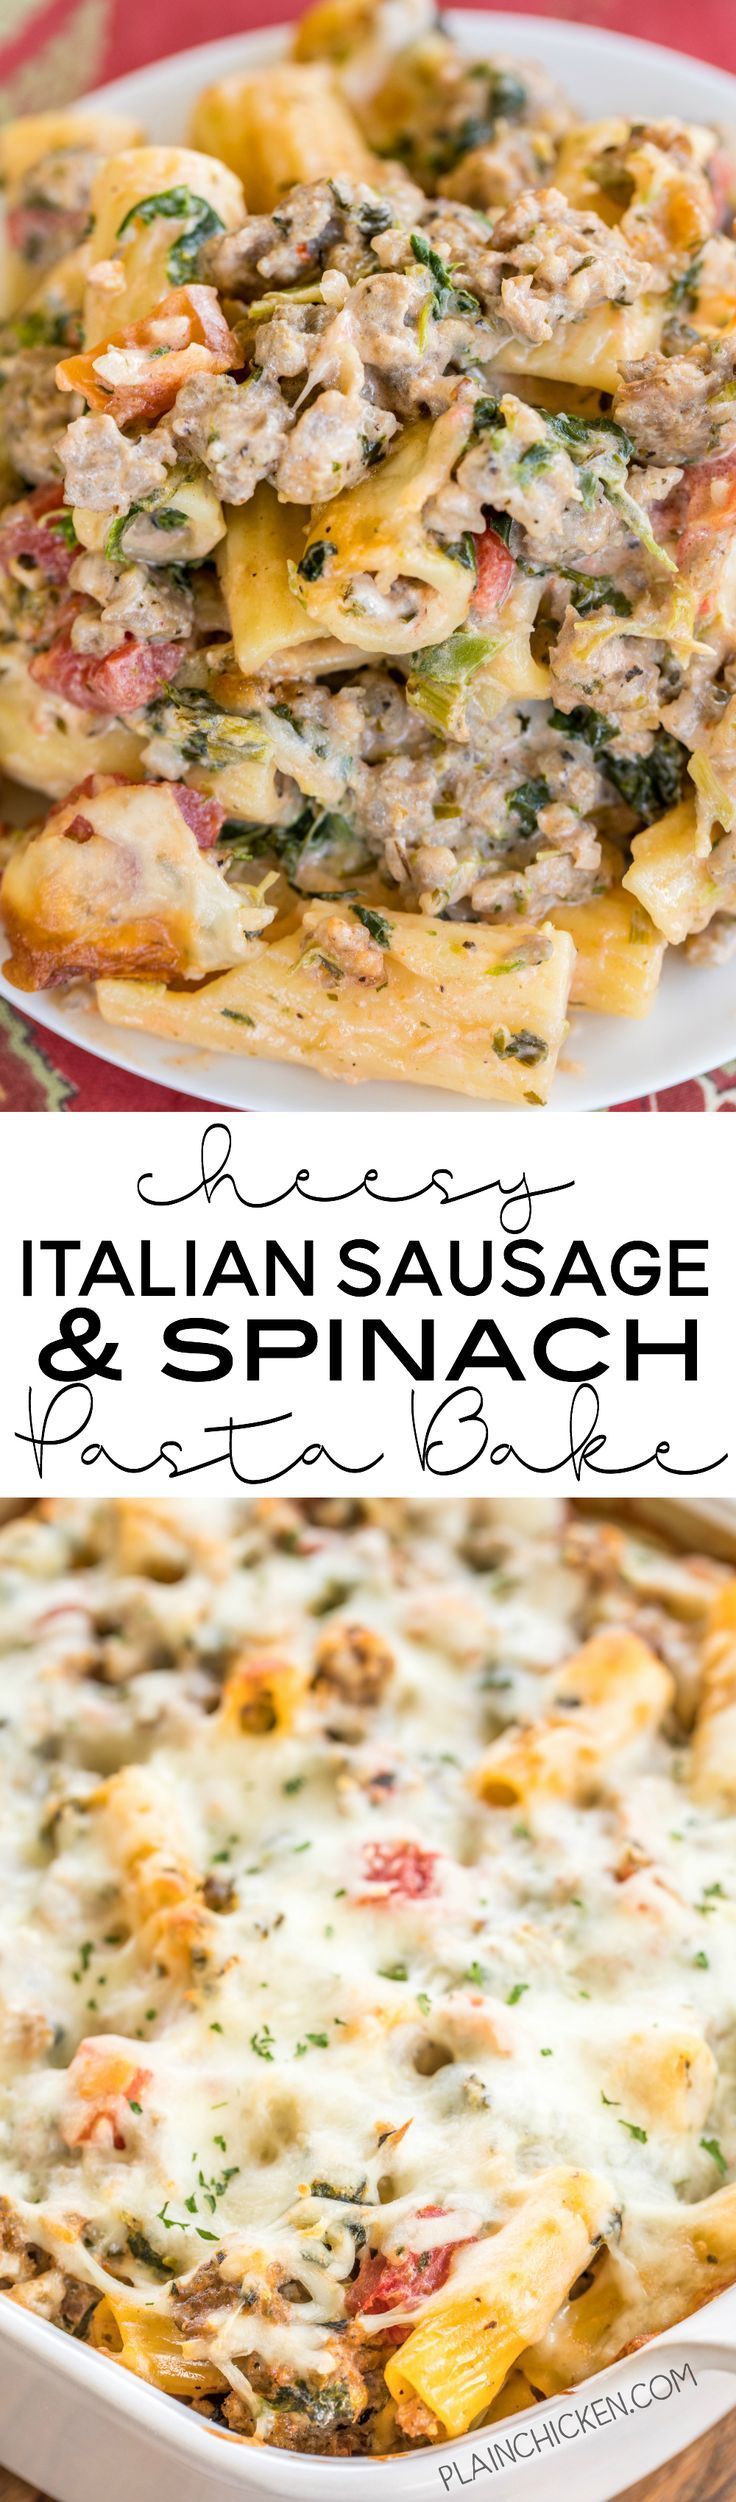 Cheesy Italian Sausage and Spinach Pasta Bake – pasta, onion, spinach, Italian sausage, tomatoes, italian seasoning,